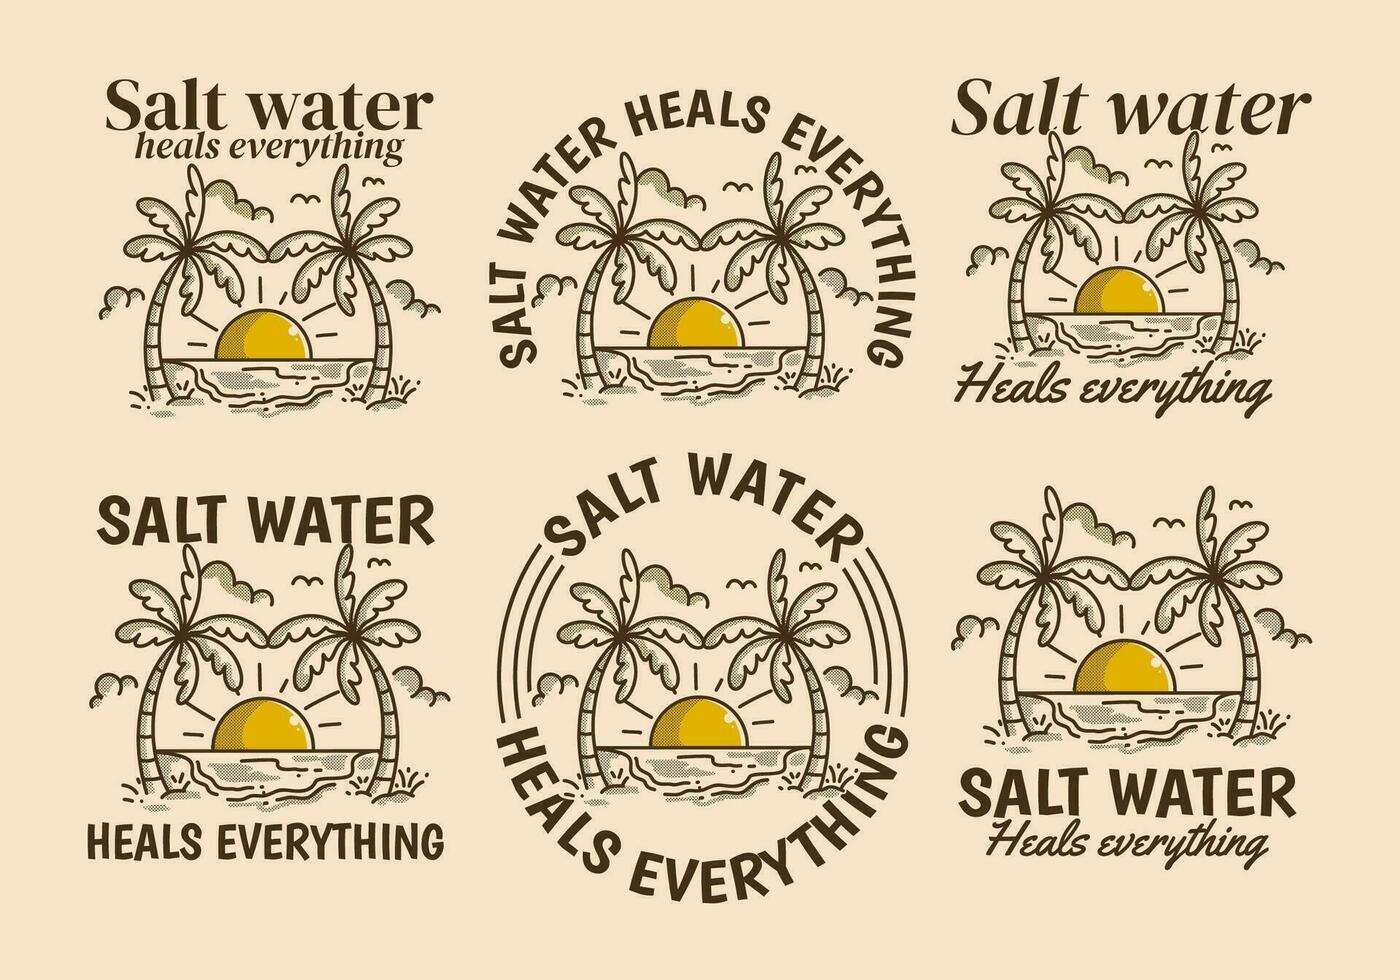 zout water geneest alles. retro lijn kunst illustratie van een strand met groot zon vector